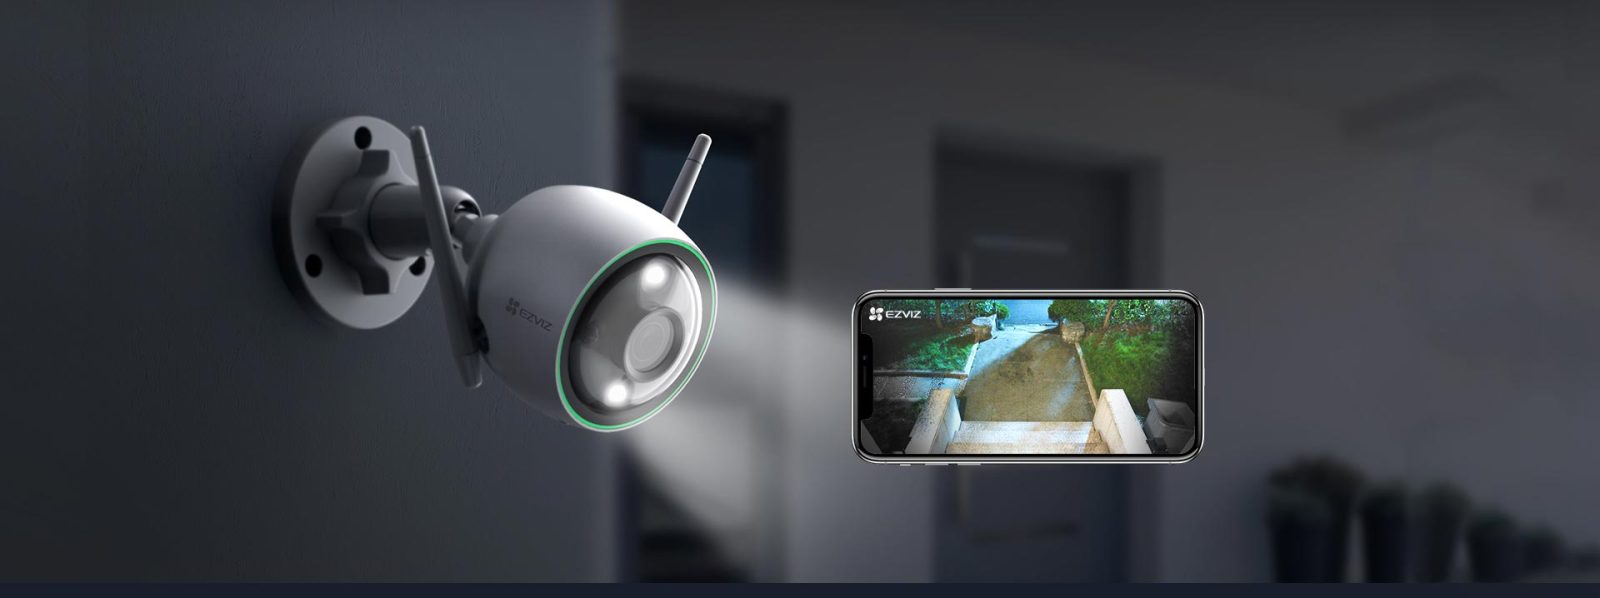 c3n-best-wifi-smart-camera-in-sri-lanka